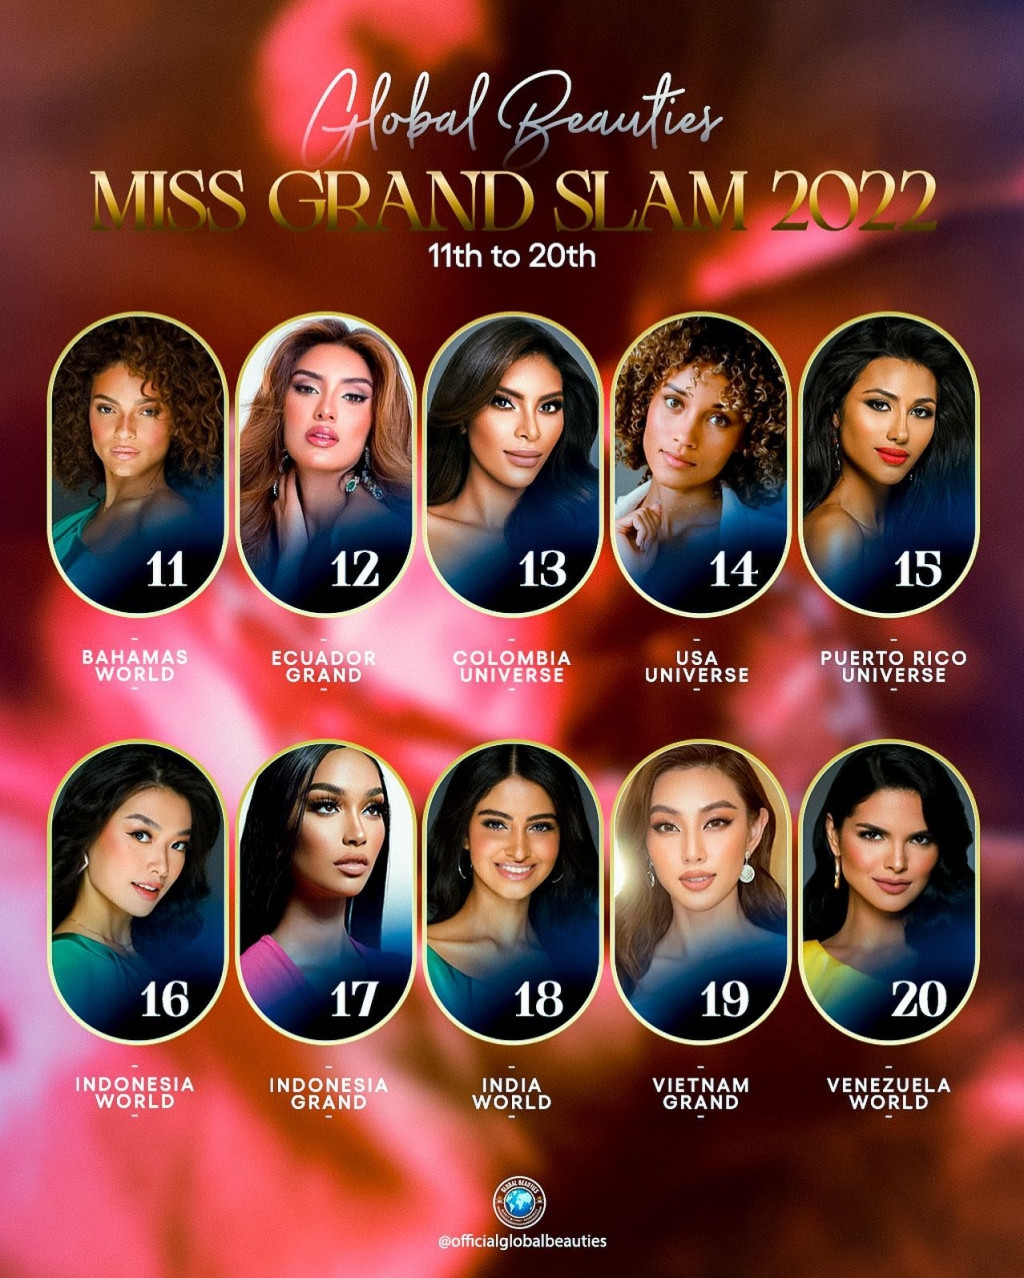 Hoa hậu Thùy Tiên “trượt” top 10 “Hoa hậu của các Hoa hậu” năm 2021